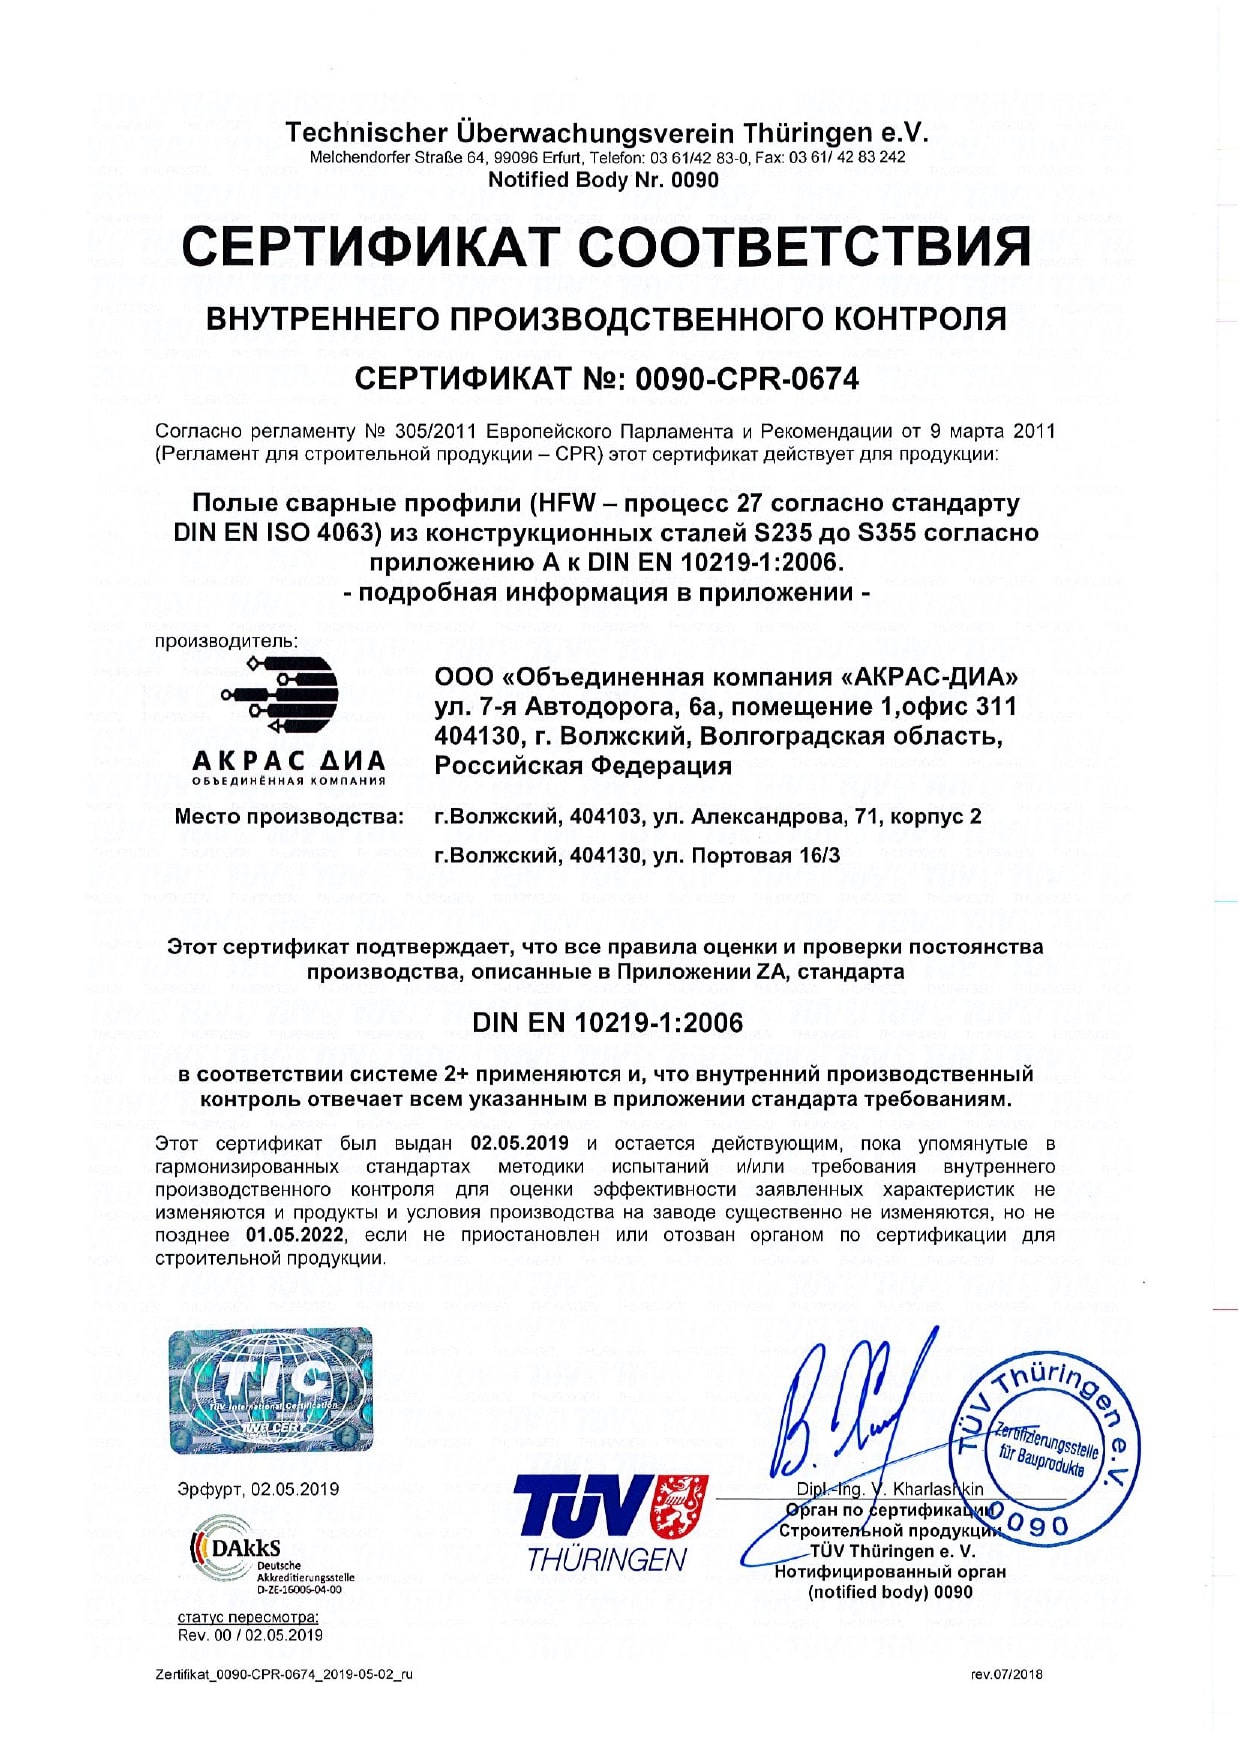 Сертификат соответствия внутреннего производственного контроля № 0090-CPR-0674